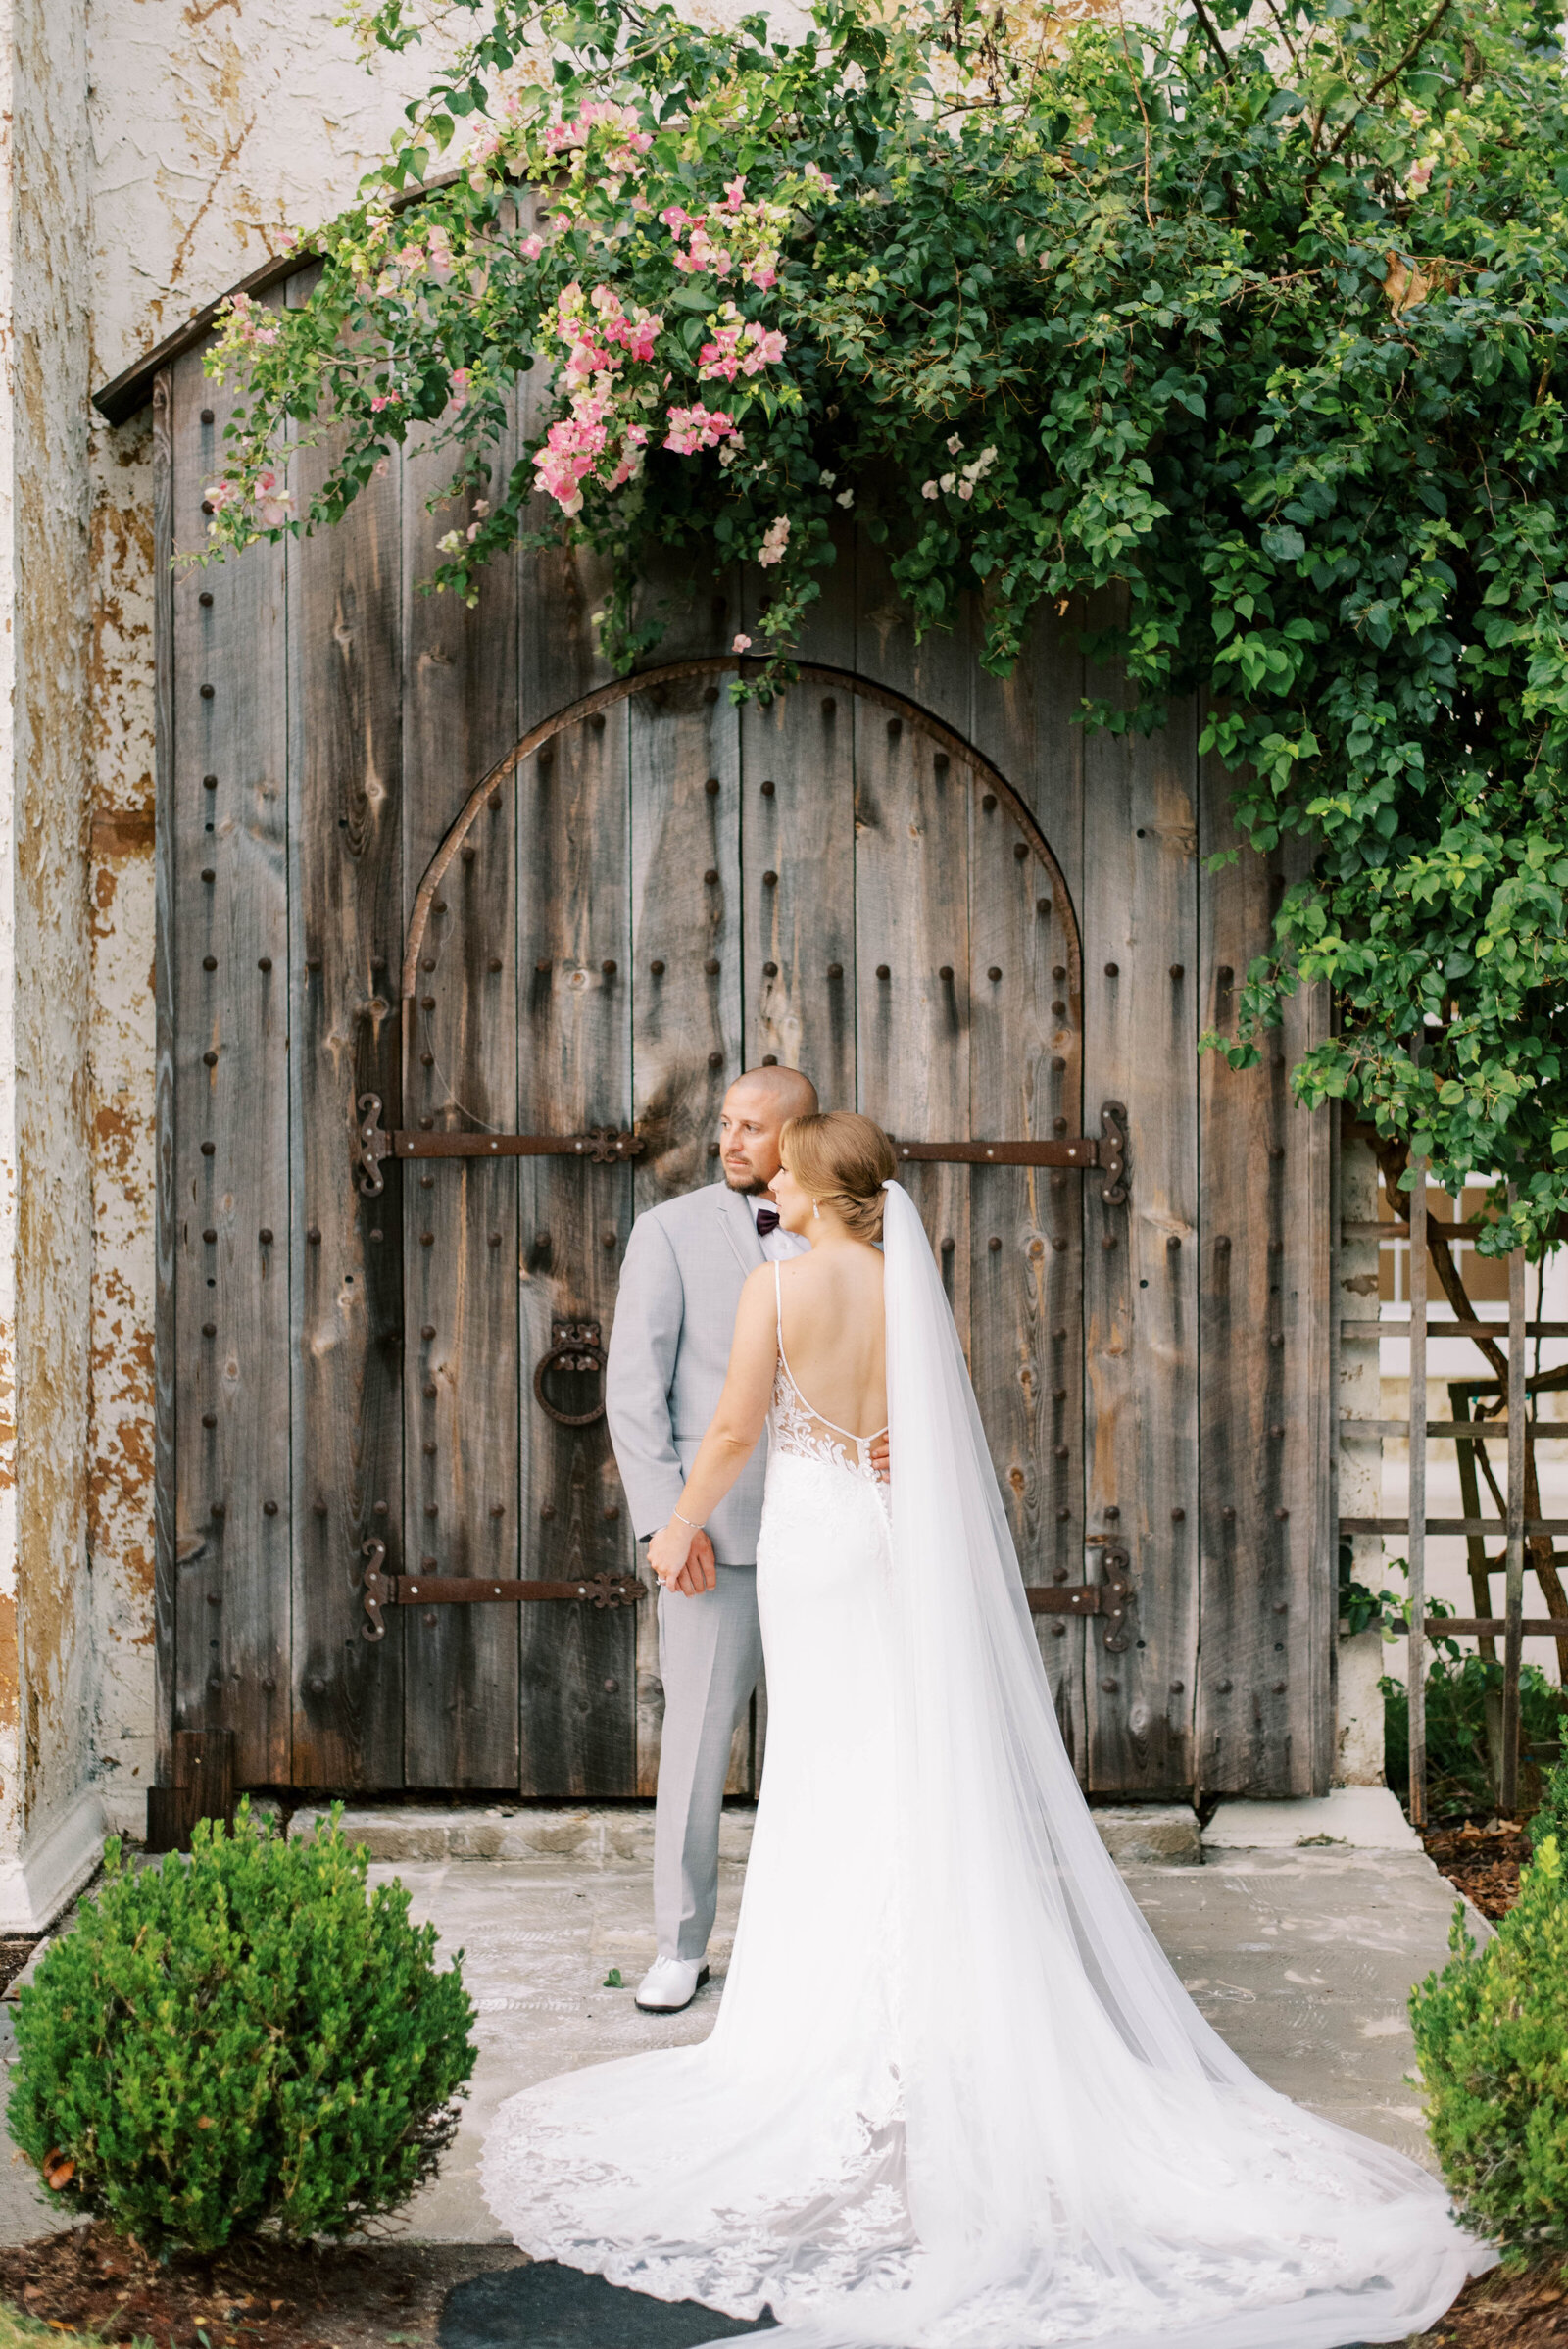 Danica-Matt-BellaCosaLakeside-Wedding-Ruth-Terrero-Photography-9082 (1)